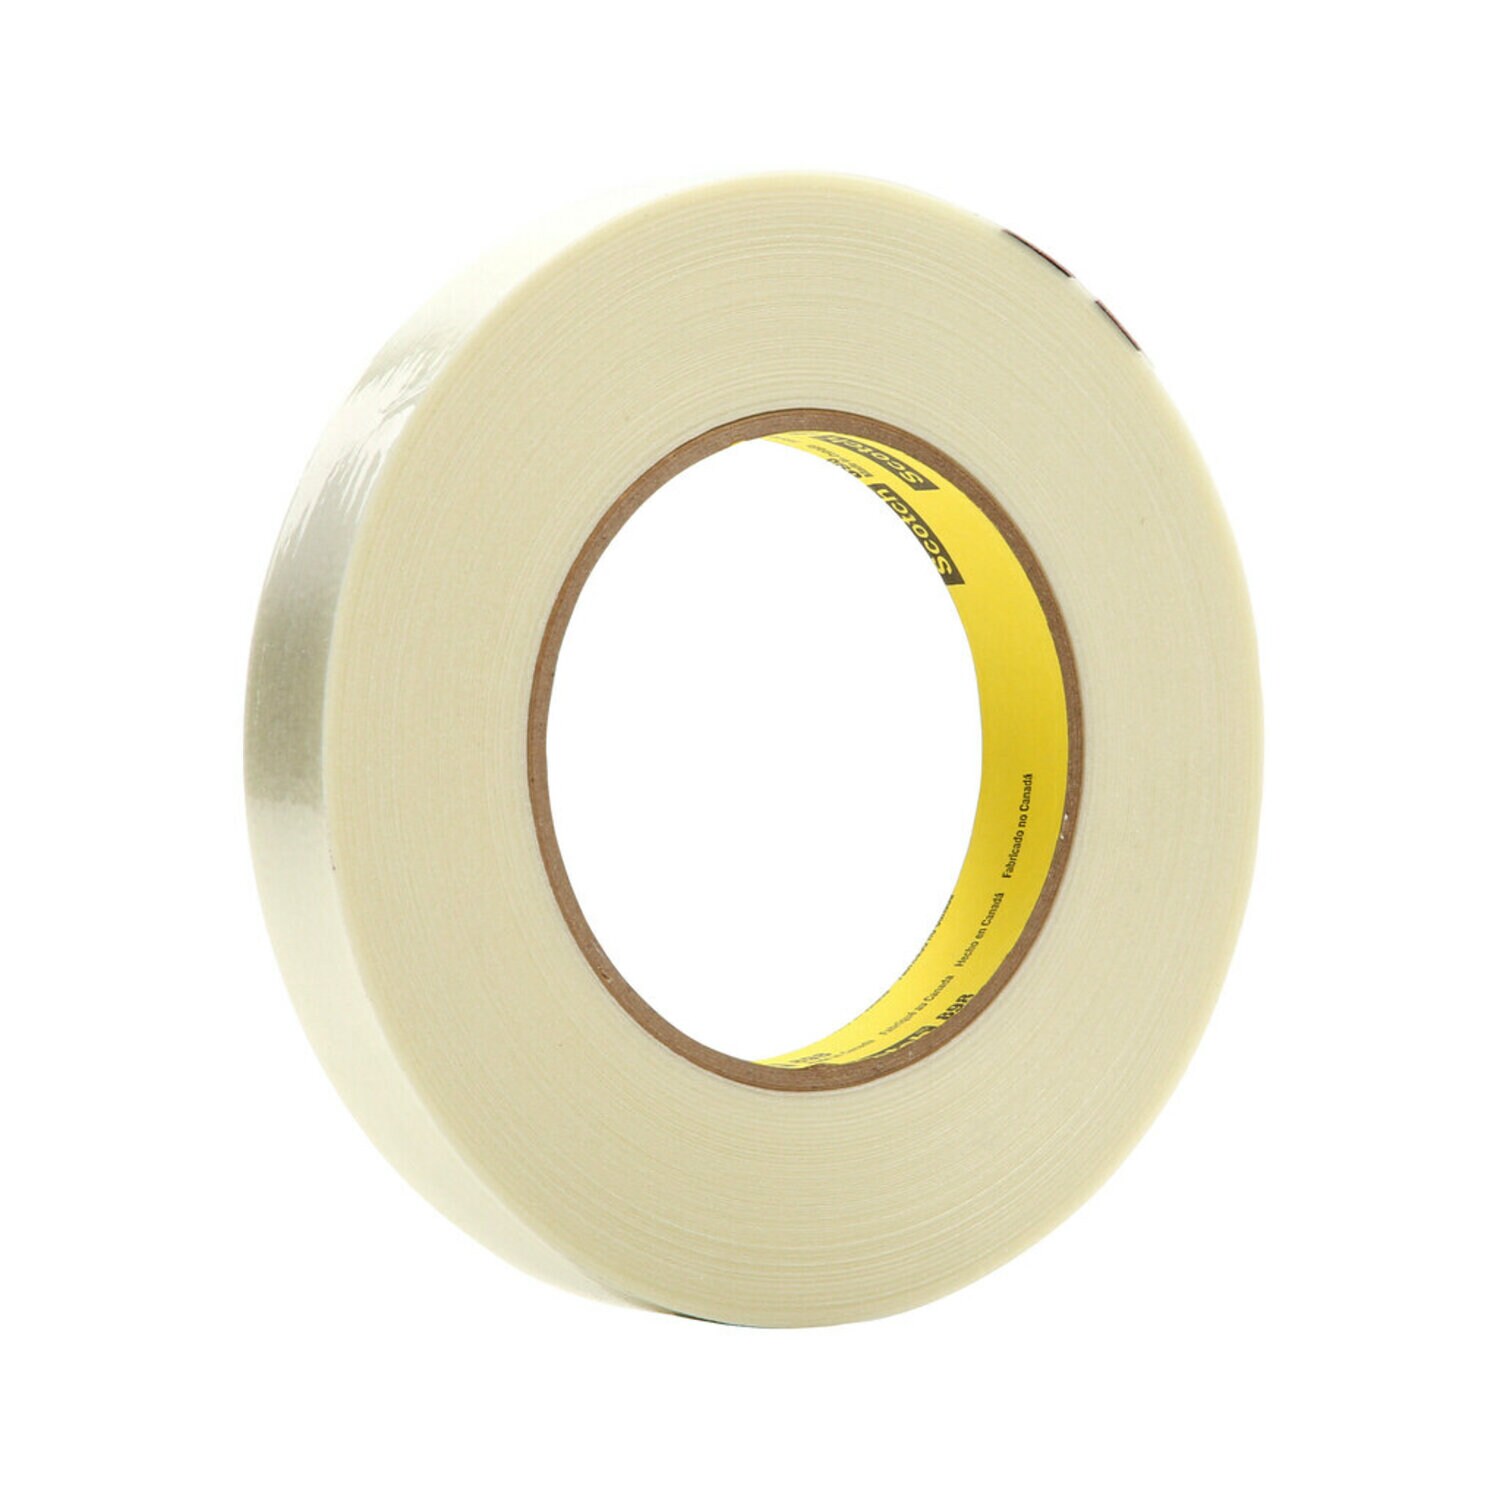 7000136832 - Scotch Filament Tape 898, Clear, 24 mm x 330 m, 6.6 mil, 6 rolls per
case